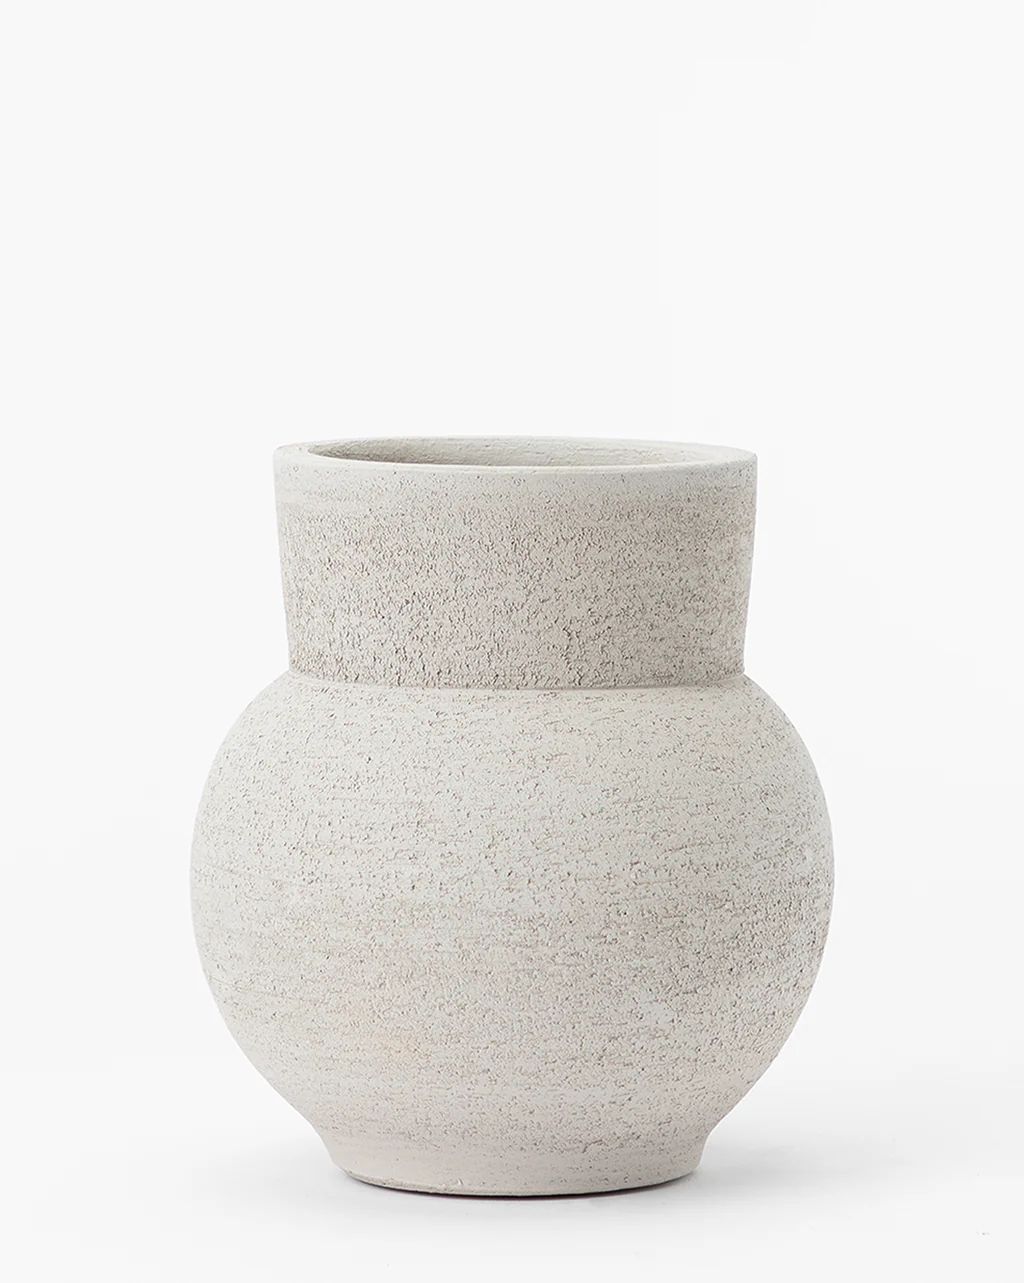 Bonneville Vase | McGee & Co.